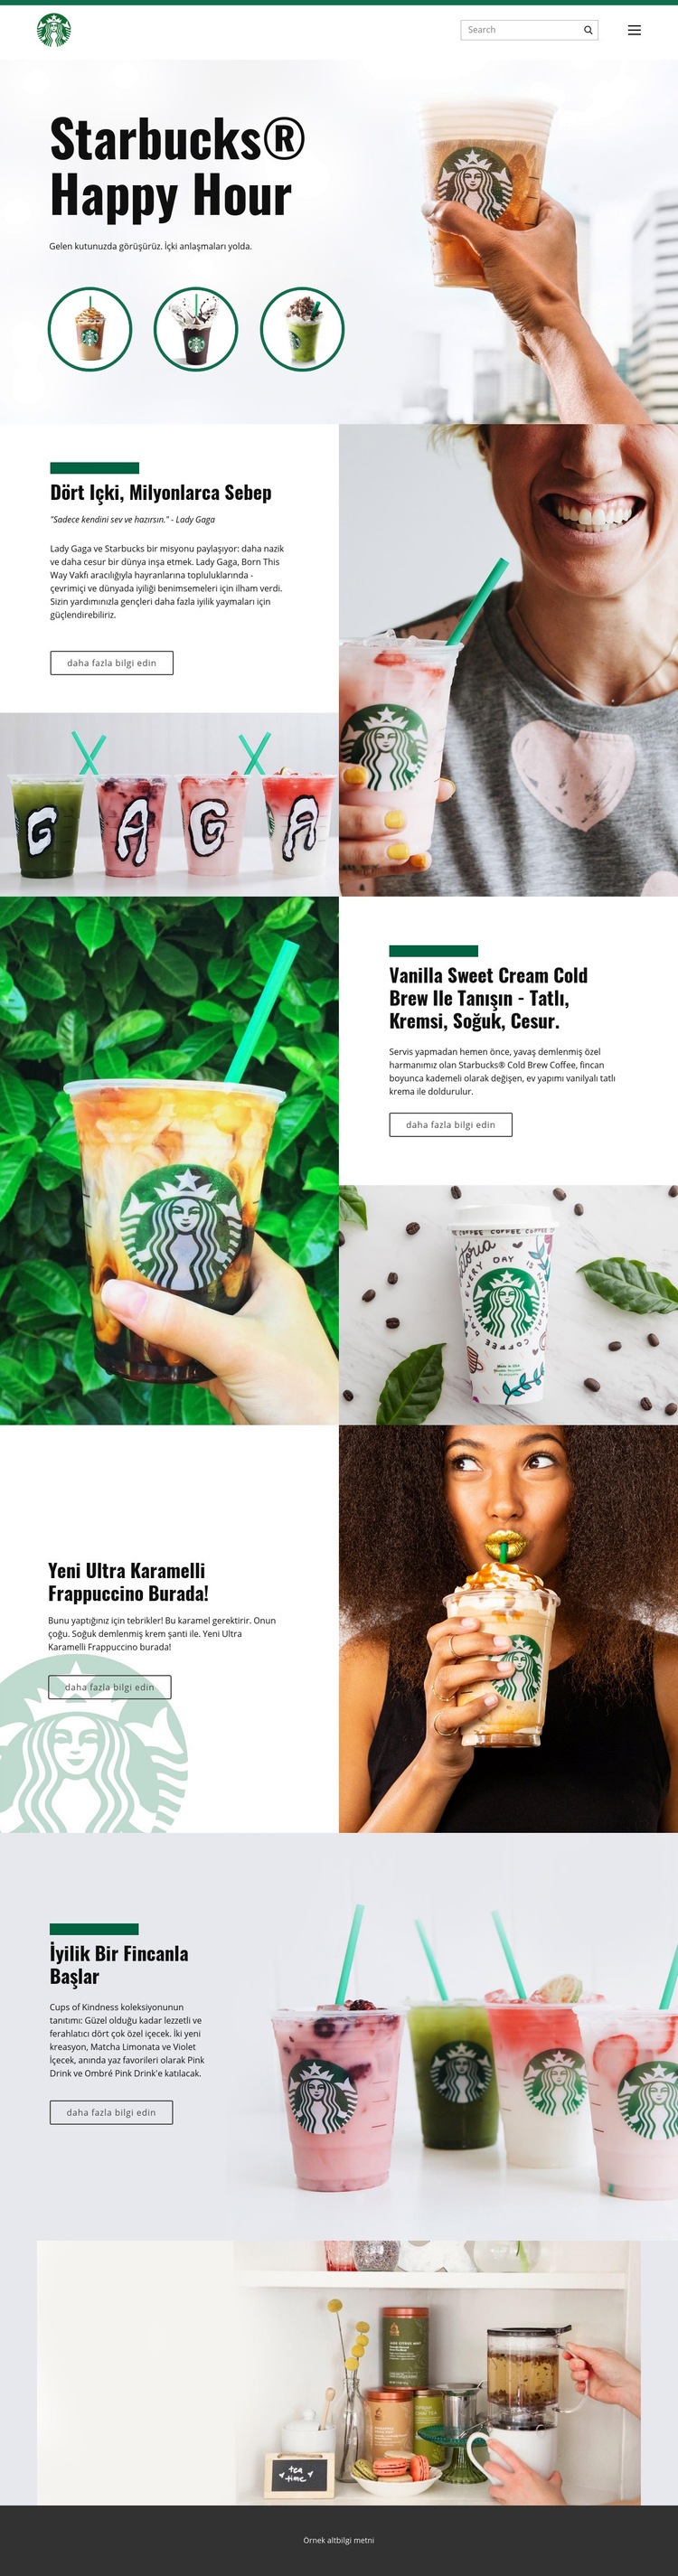 Starbucks kahve Web sitesi tasarımı